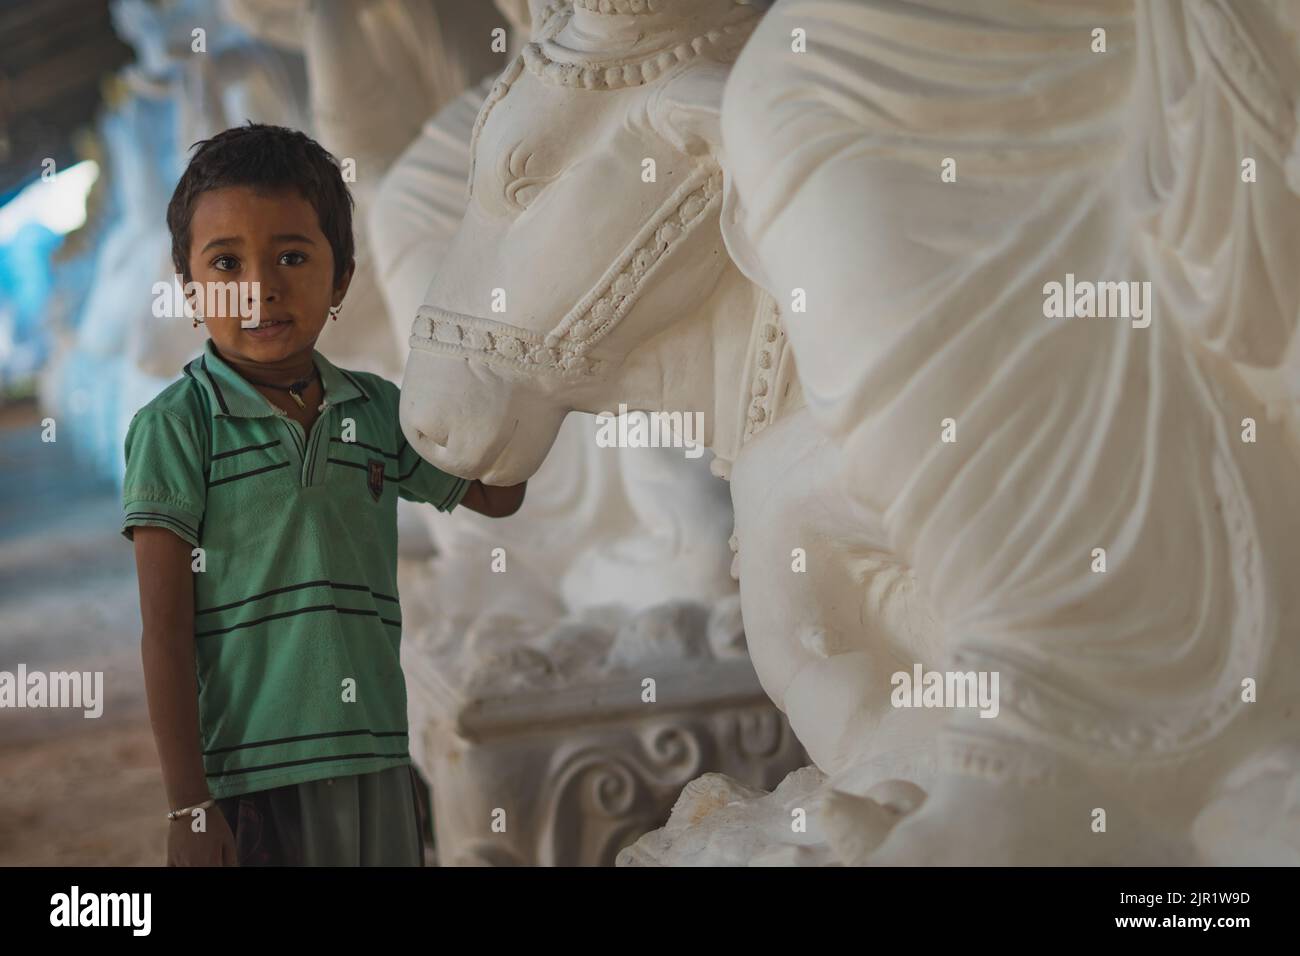 Pileru, Indien - 28,2022. Juli: Kind steht vor dem Stierkopf-Idol. Ohrringe an einem Jungen. Stockfoto